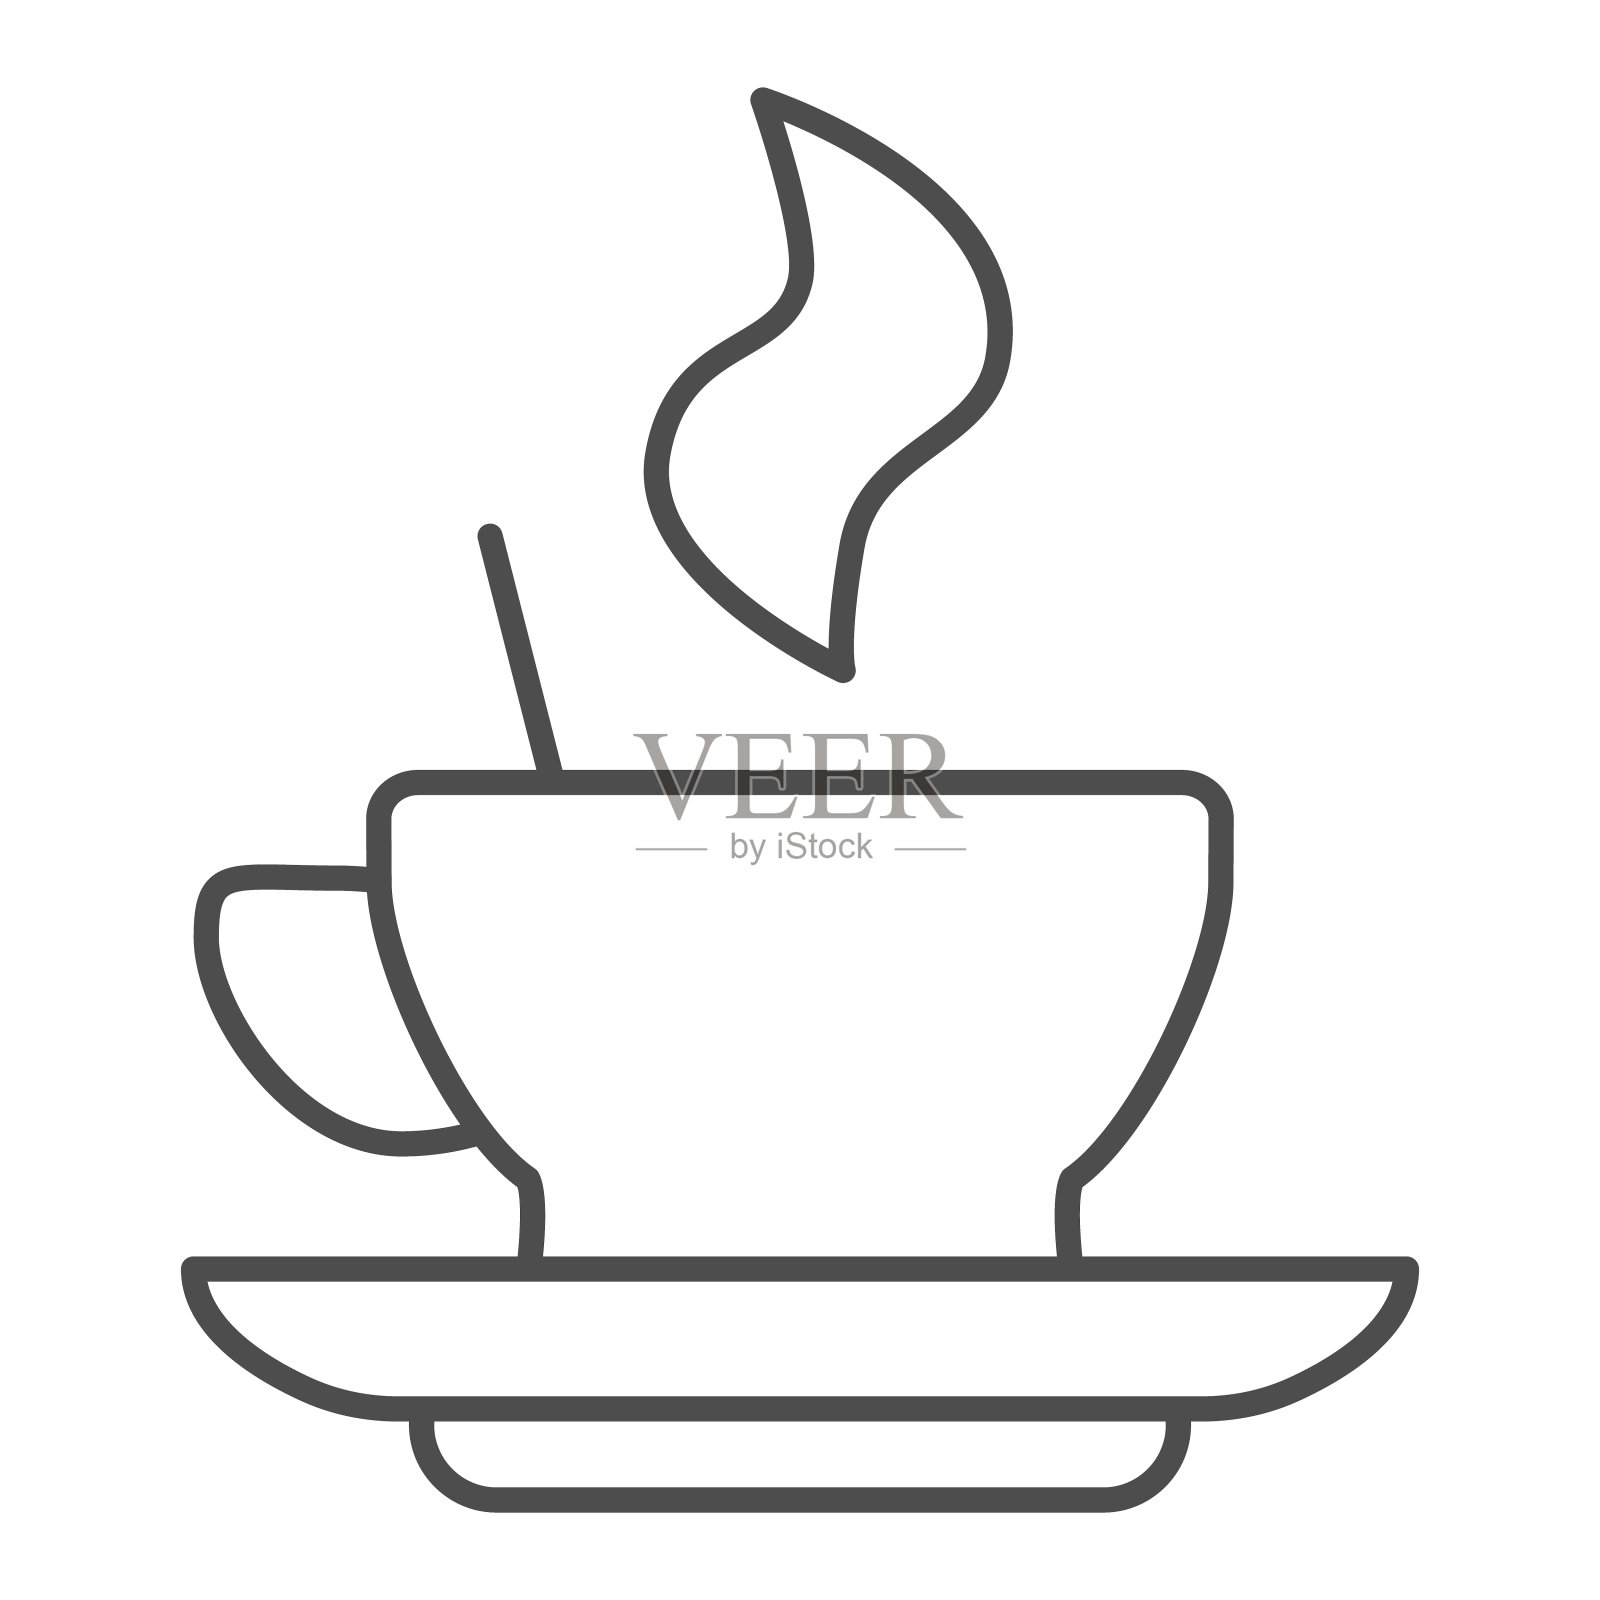 热咖啡在杯碟上细线图标。马克杯与饮料和蒸汽符号，轮廓风格的象形文字在白色的背景。咖啡或咖啡标志的移动概念，网页设计。矢量图形。插画图片素材